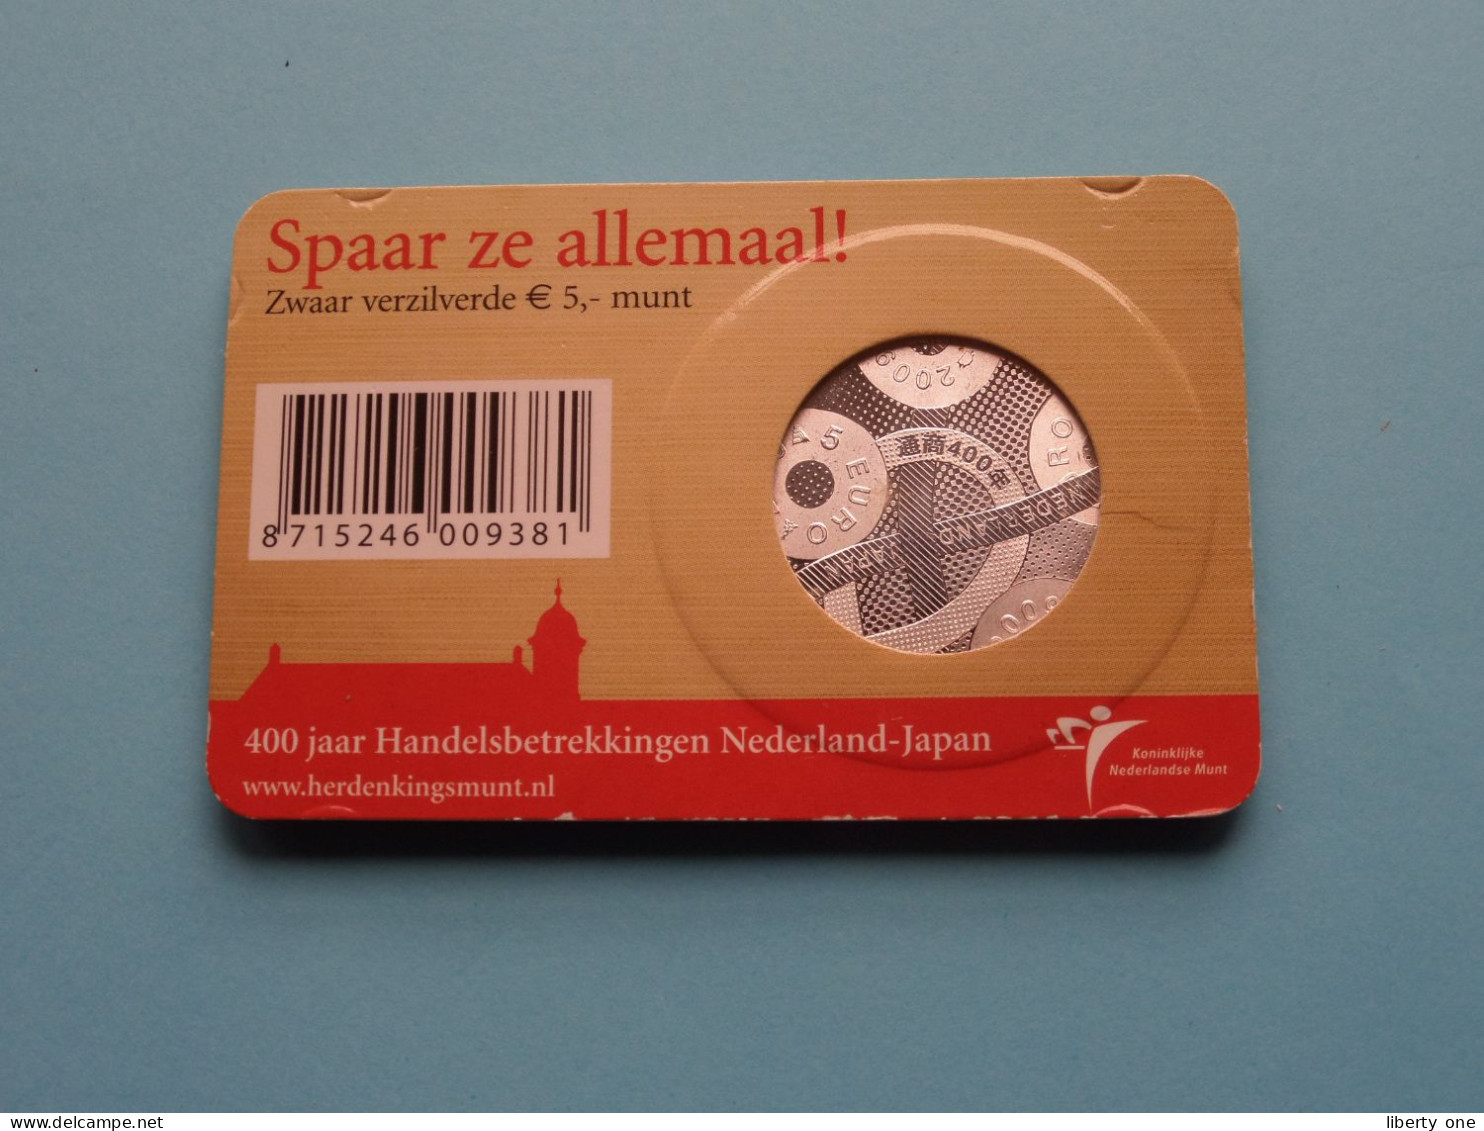 Het JAPAN Vijfje > Officiële Herdenkingsmunt 2009 - 5 Euro ( Zie / Voir / See > DETAIL > SCANS ) ! - Nederland